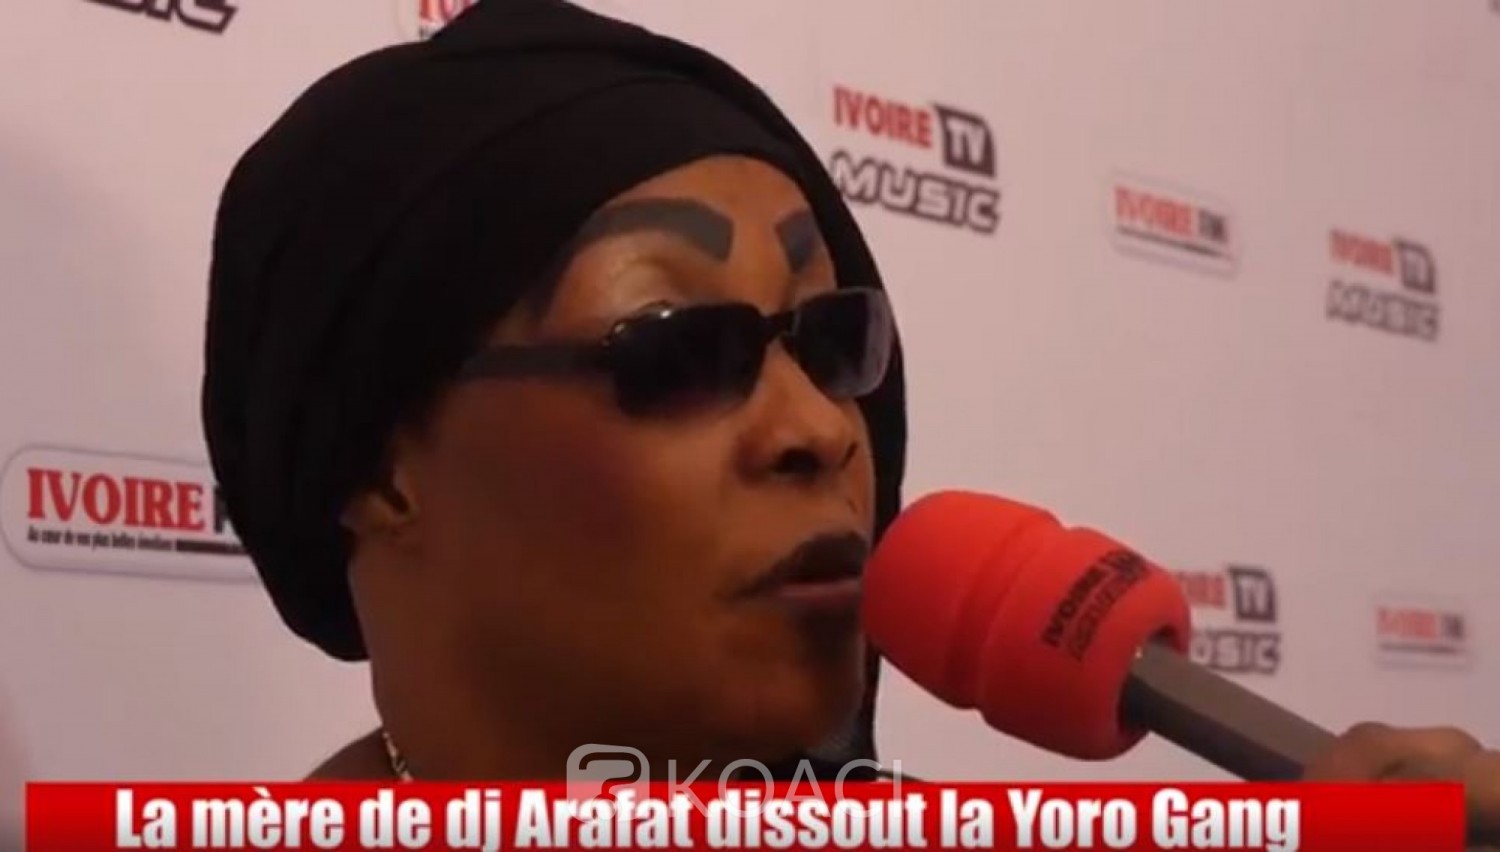 Côte d'Ivoire: Après la mort d'Arafat, Tina Glamour dissout la « Yorogang » et martèle «son ordinateur a disparu, son téléphone a disparu, Eto'o Fils ne m'a pas donné 42 millions»